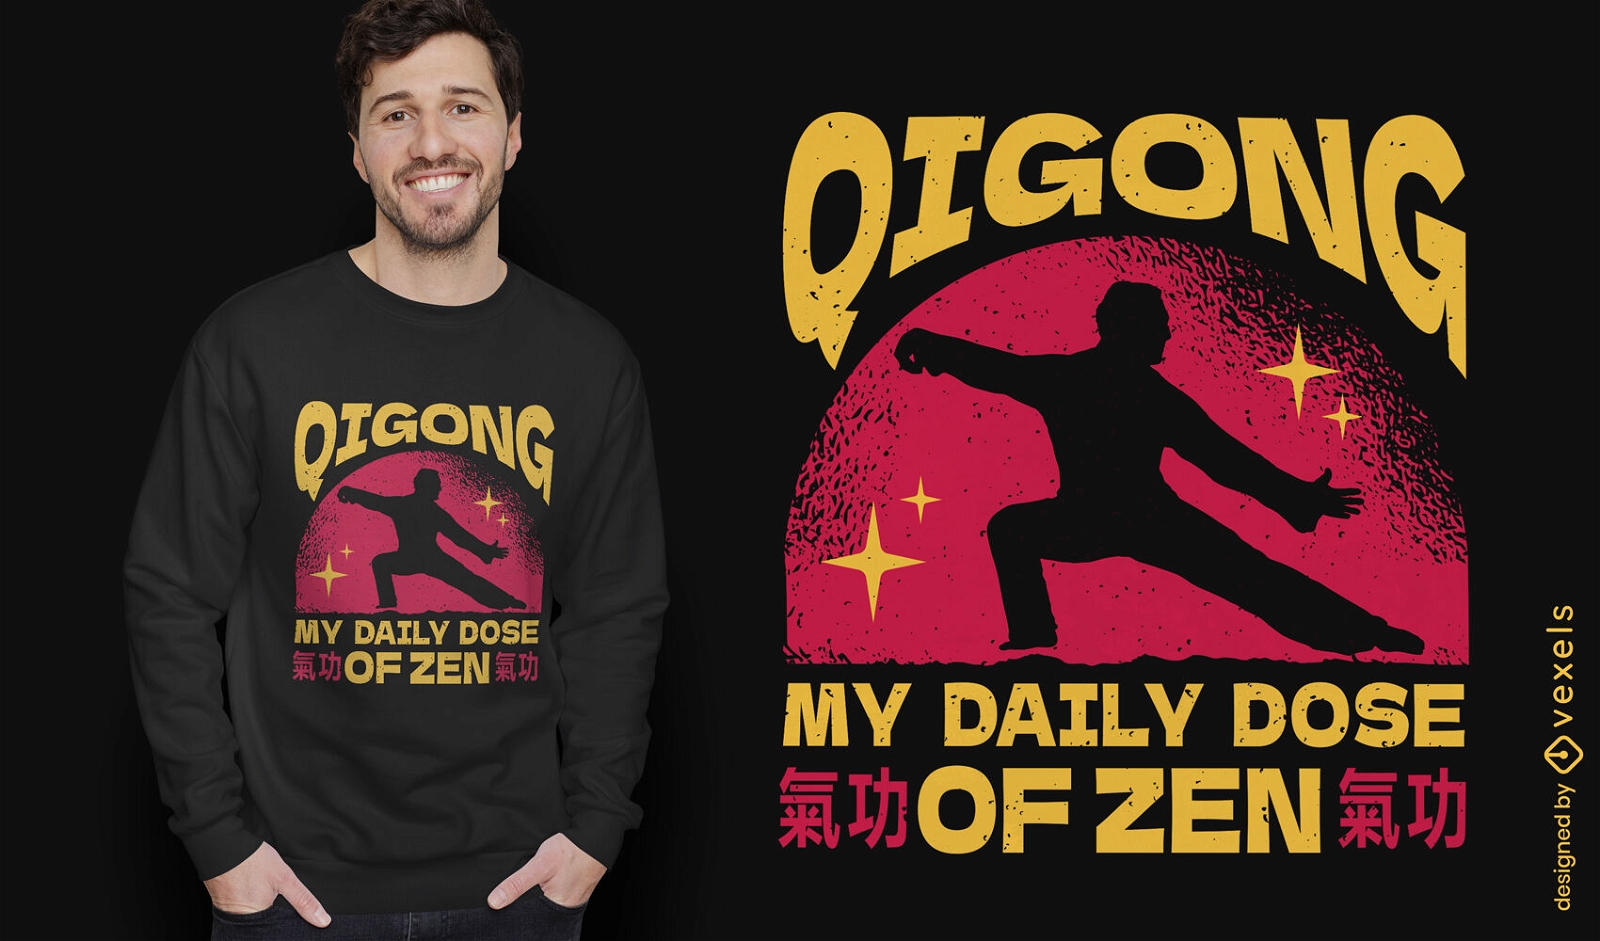 Qigong martial arts pose t-shirt design